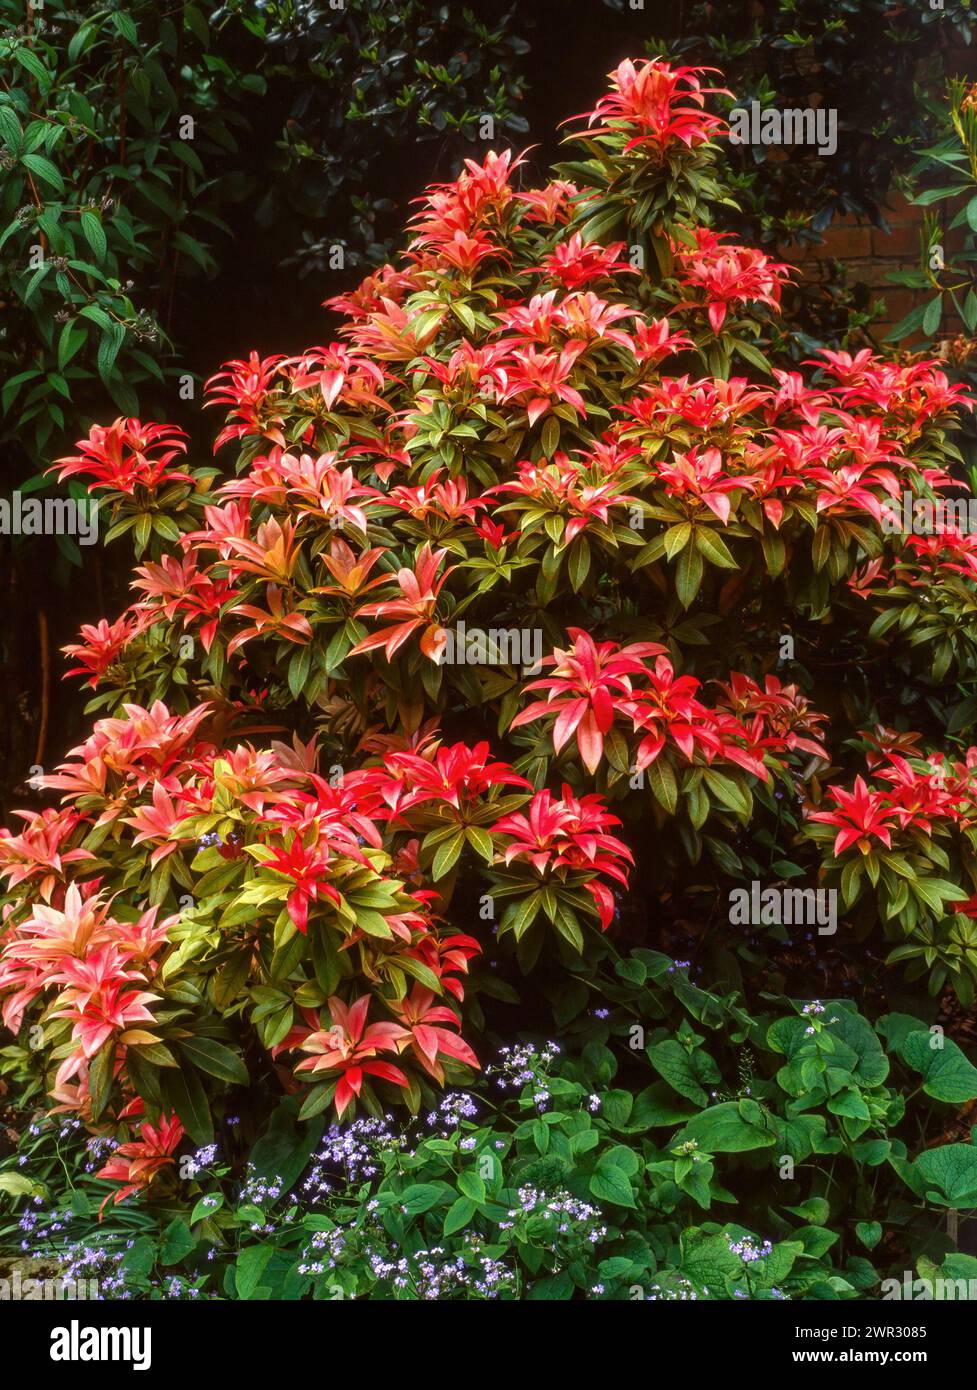 Brillant rot/karmesinrote und grüne immergrüne Sträucher Pieris 'Forest Flame' / Pieris floribunda, wächst im englischen Garten, Großbritannien Stockfoto